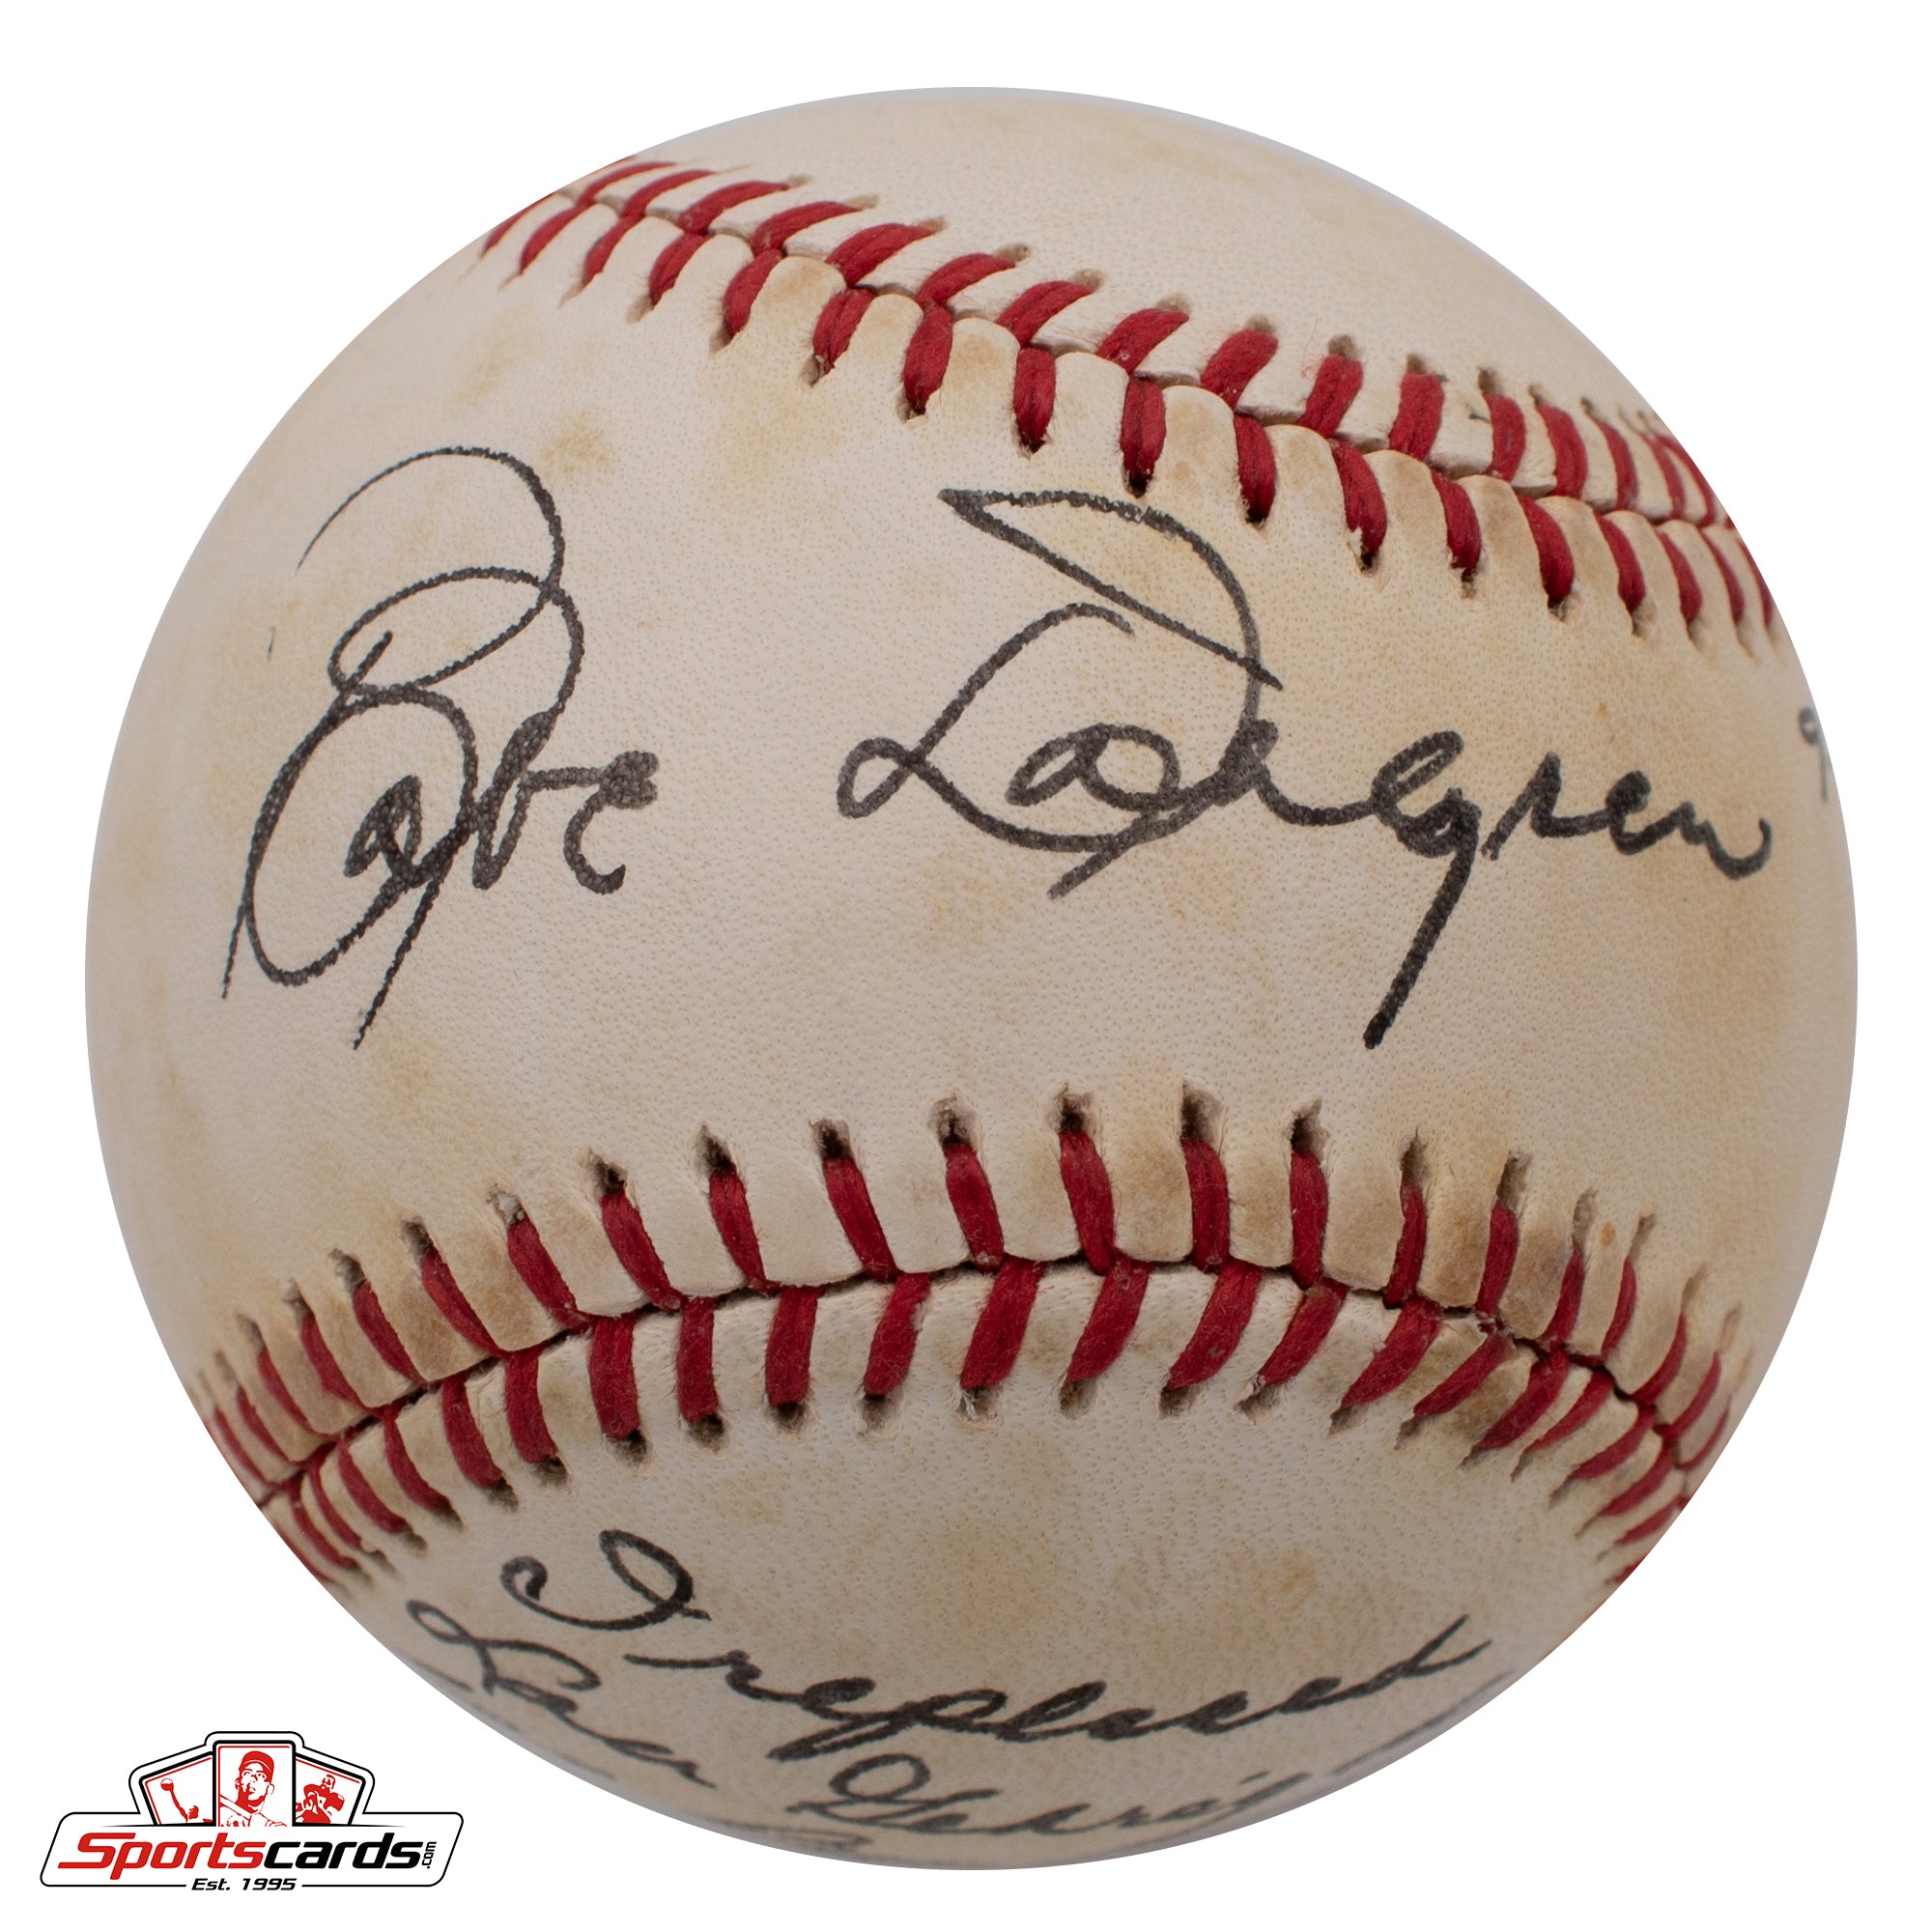 Babe Dahlgren "I Replaced Lou Gehrig" Signed Baseball Beckett BAS Yankees